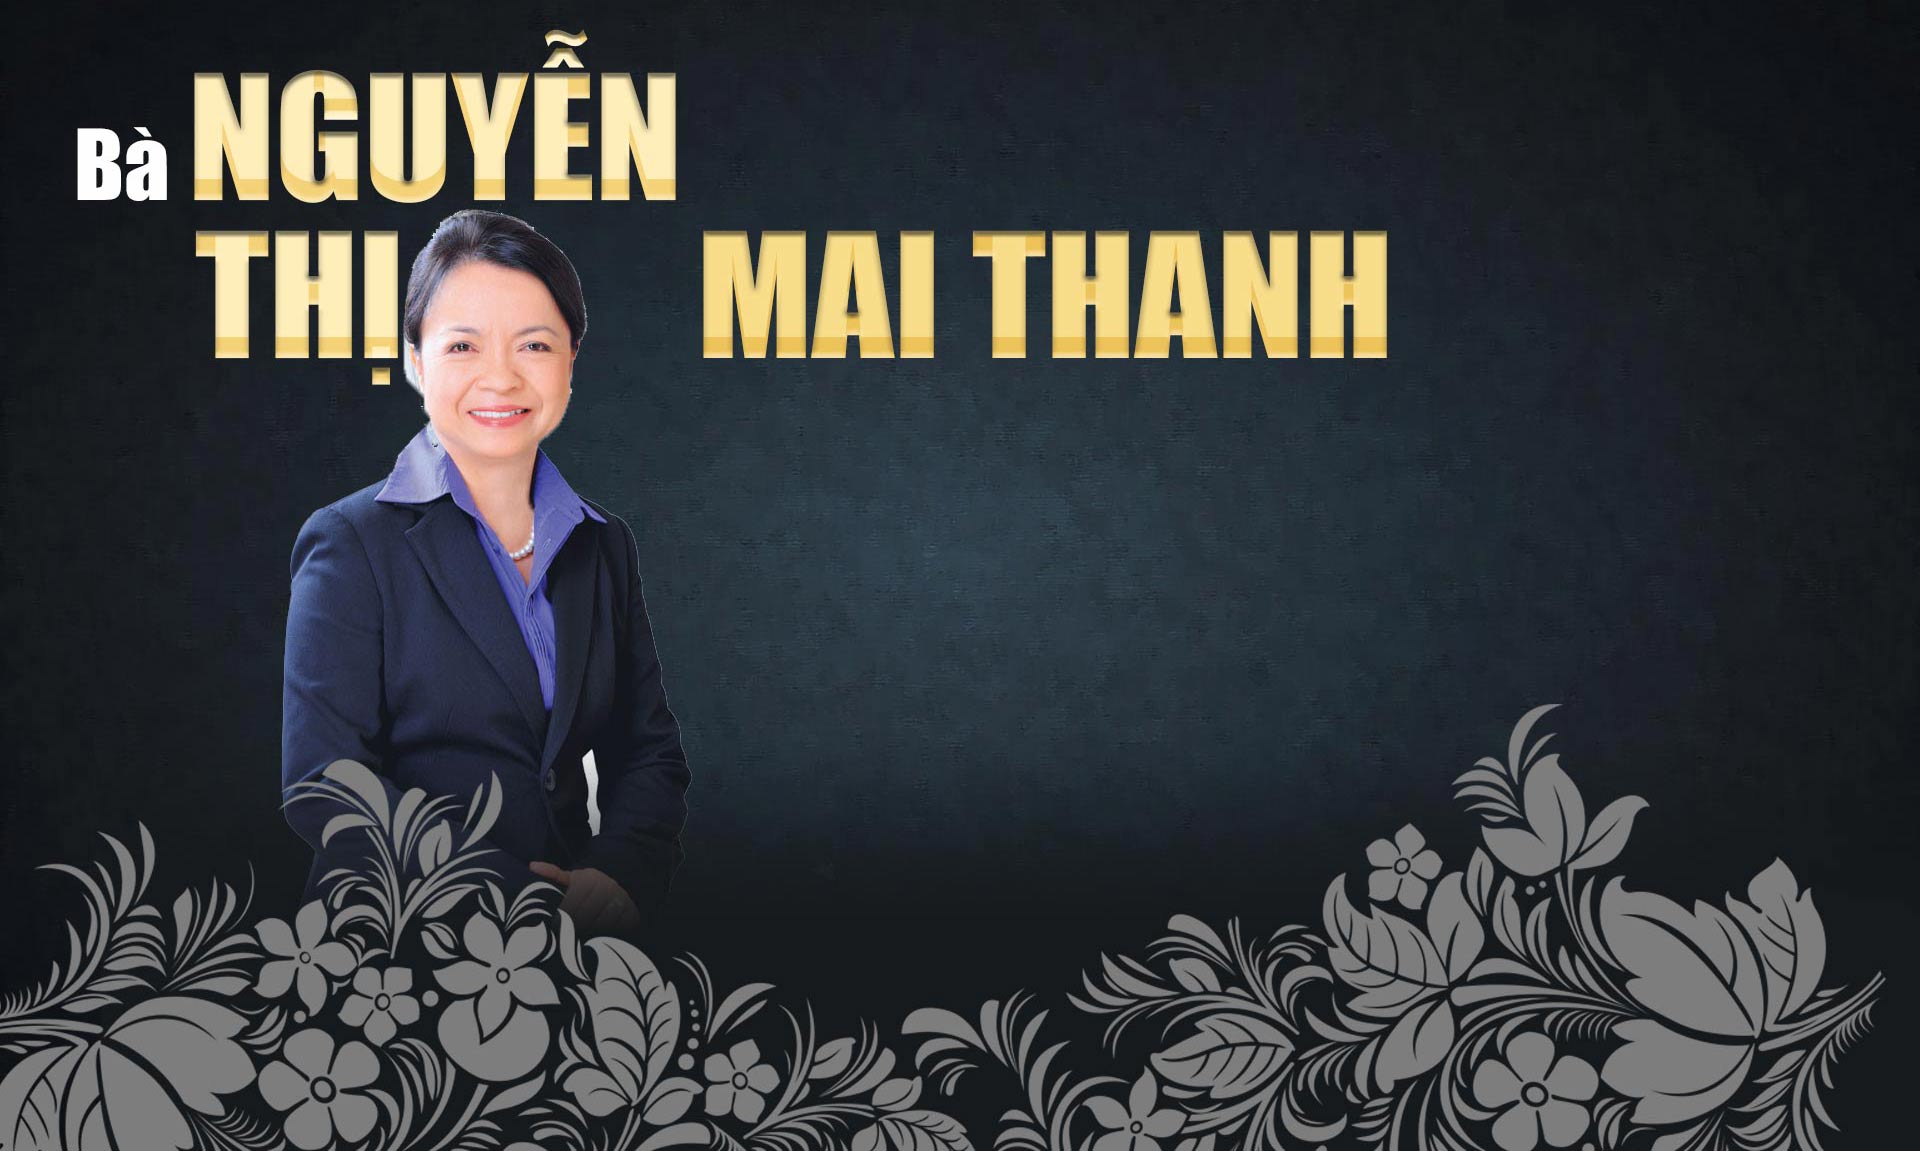 10 phụ nữ Việt gây choáng bởi sự giàu có, giỏi giang và quyền lực - 16